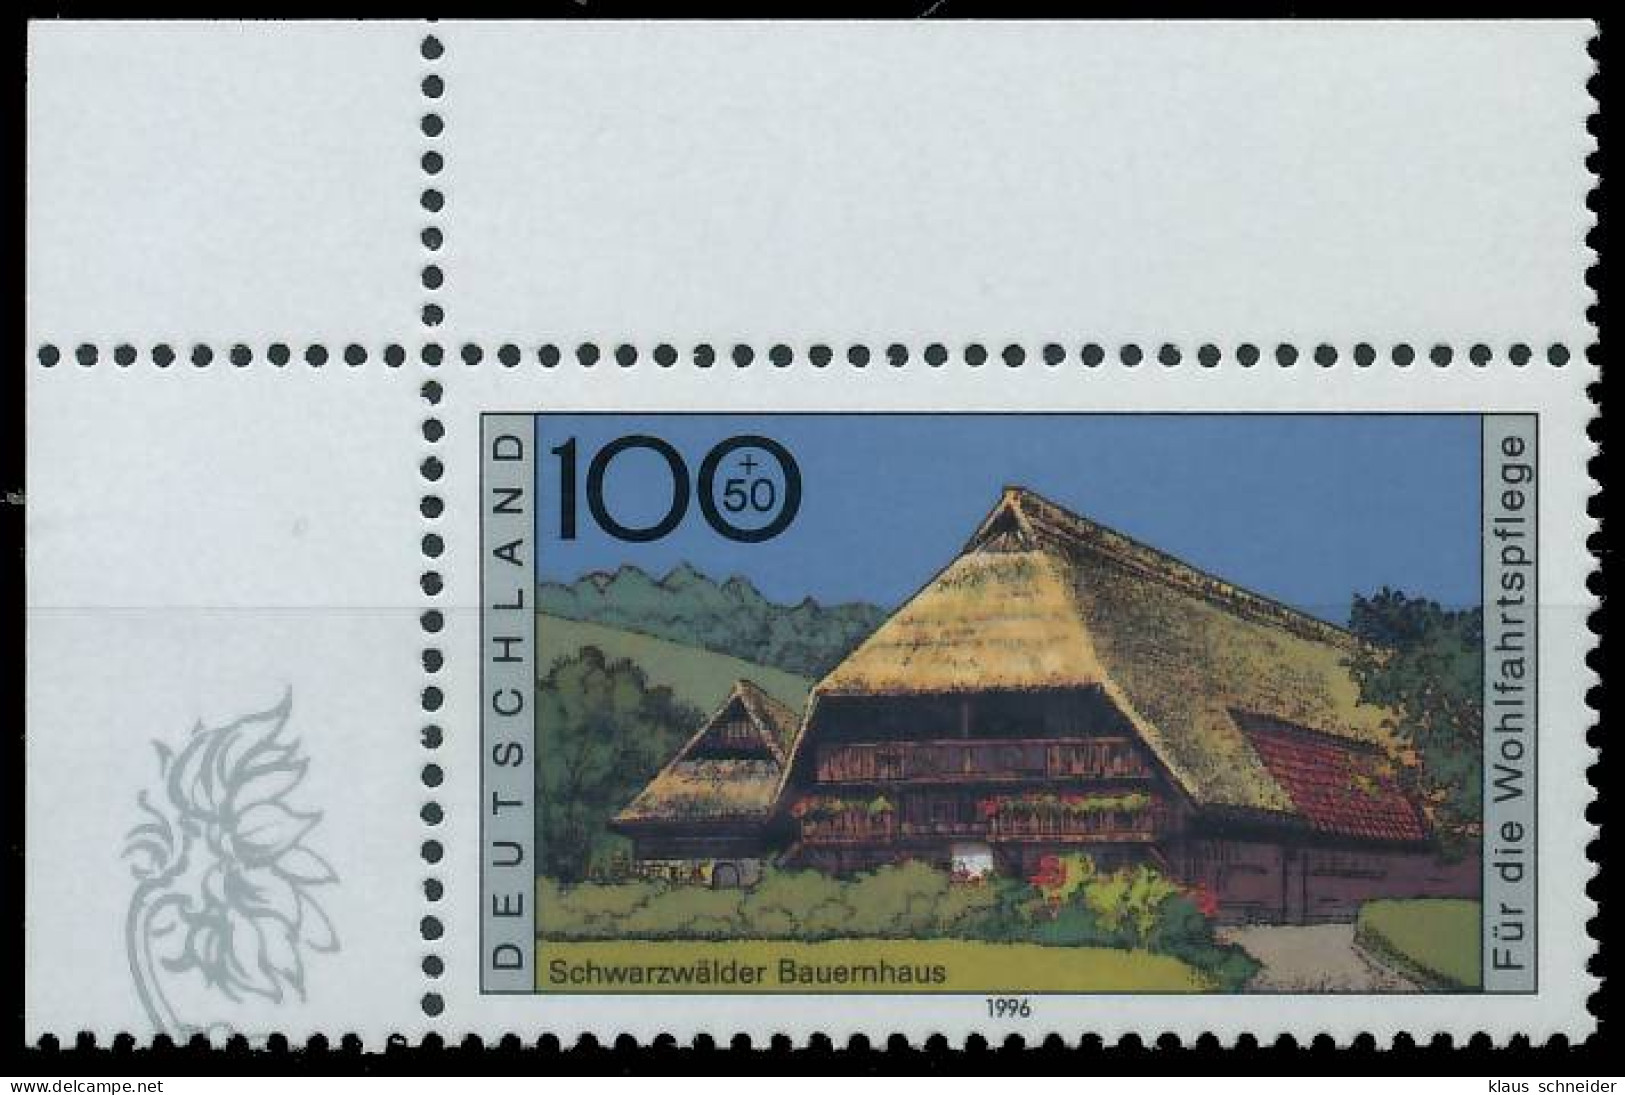 BRD BUND 1996 Nr 1885 Postfrisch ECKE-OLI SF37DE2 - Unused Stamps